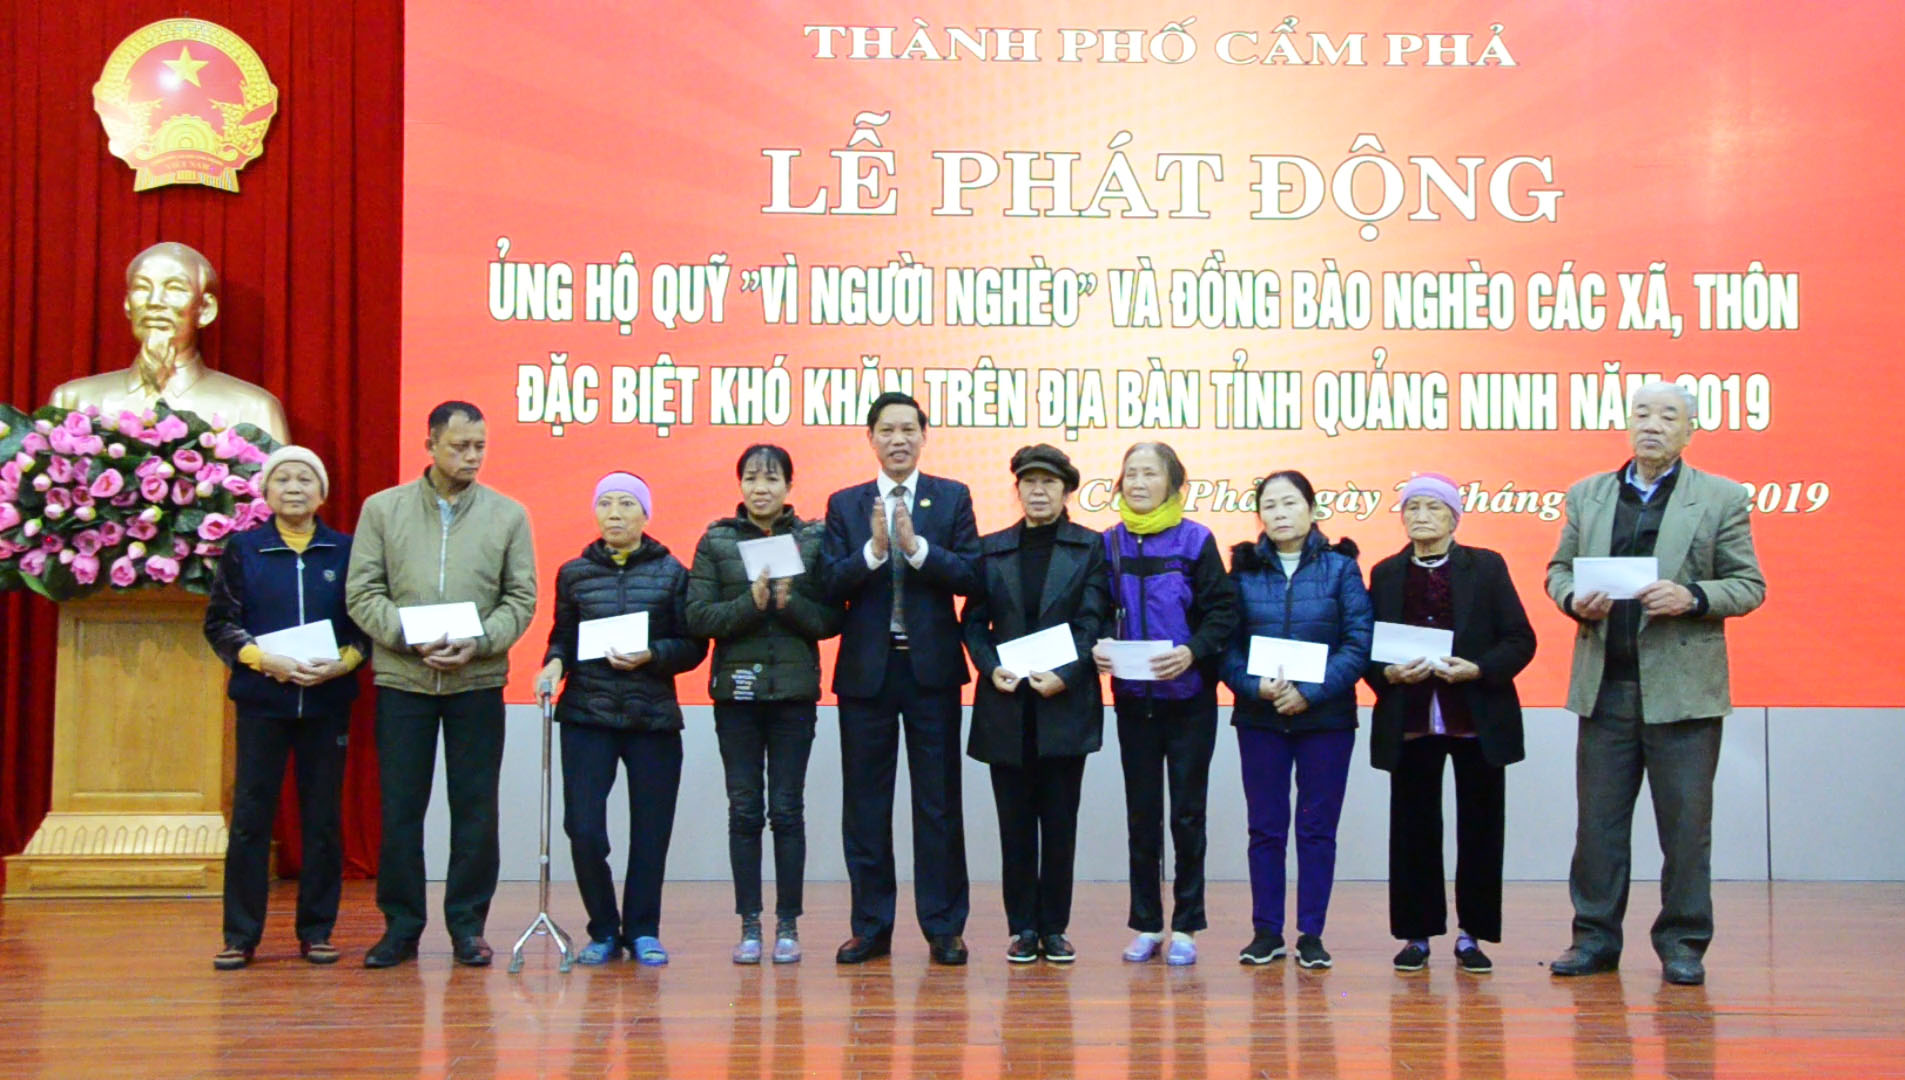 Thành phố Cẩm Phả trao thưởng cho 34 hộ thoát nghèo trong năm 2019